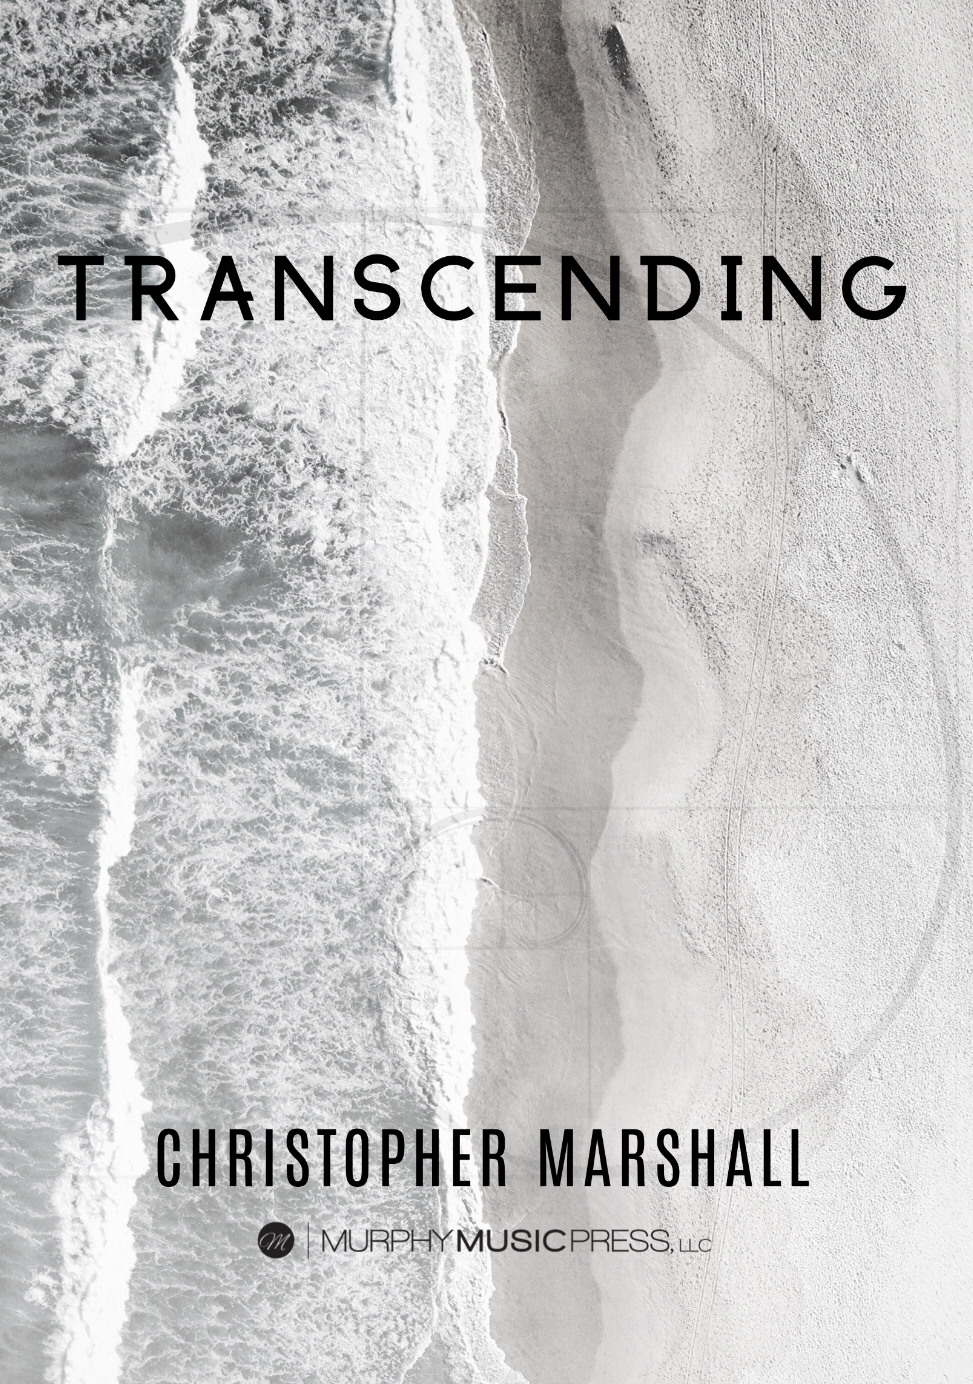 Transcending by Christopher Marshall